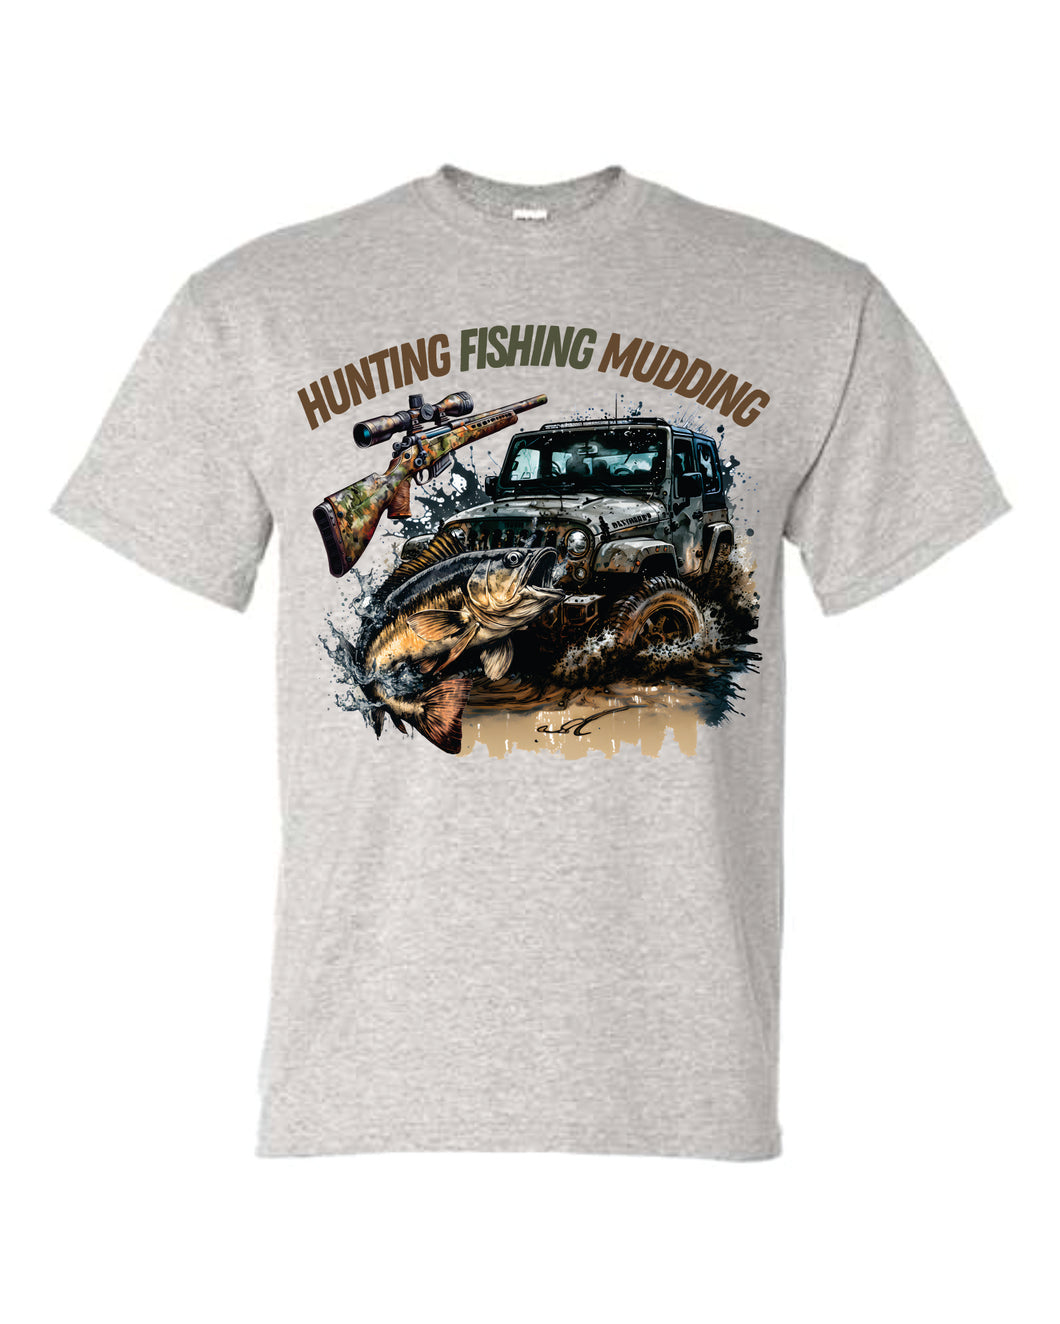 DTF0424 Hunting Fishing Mudding